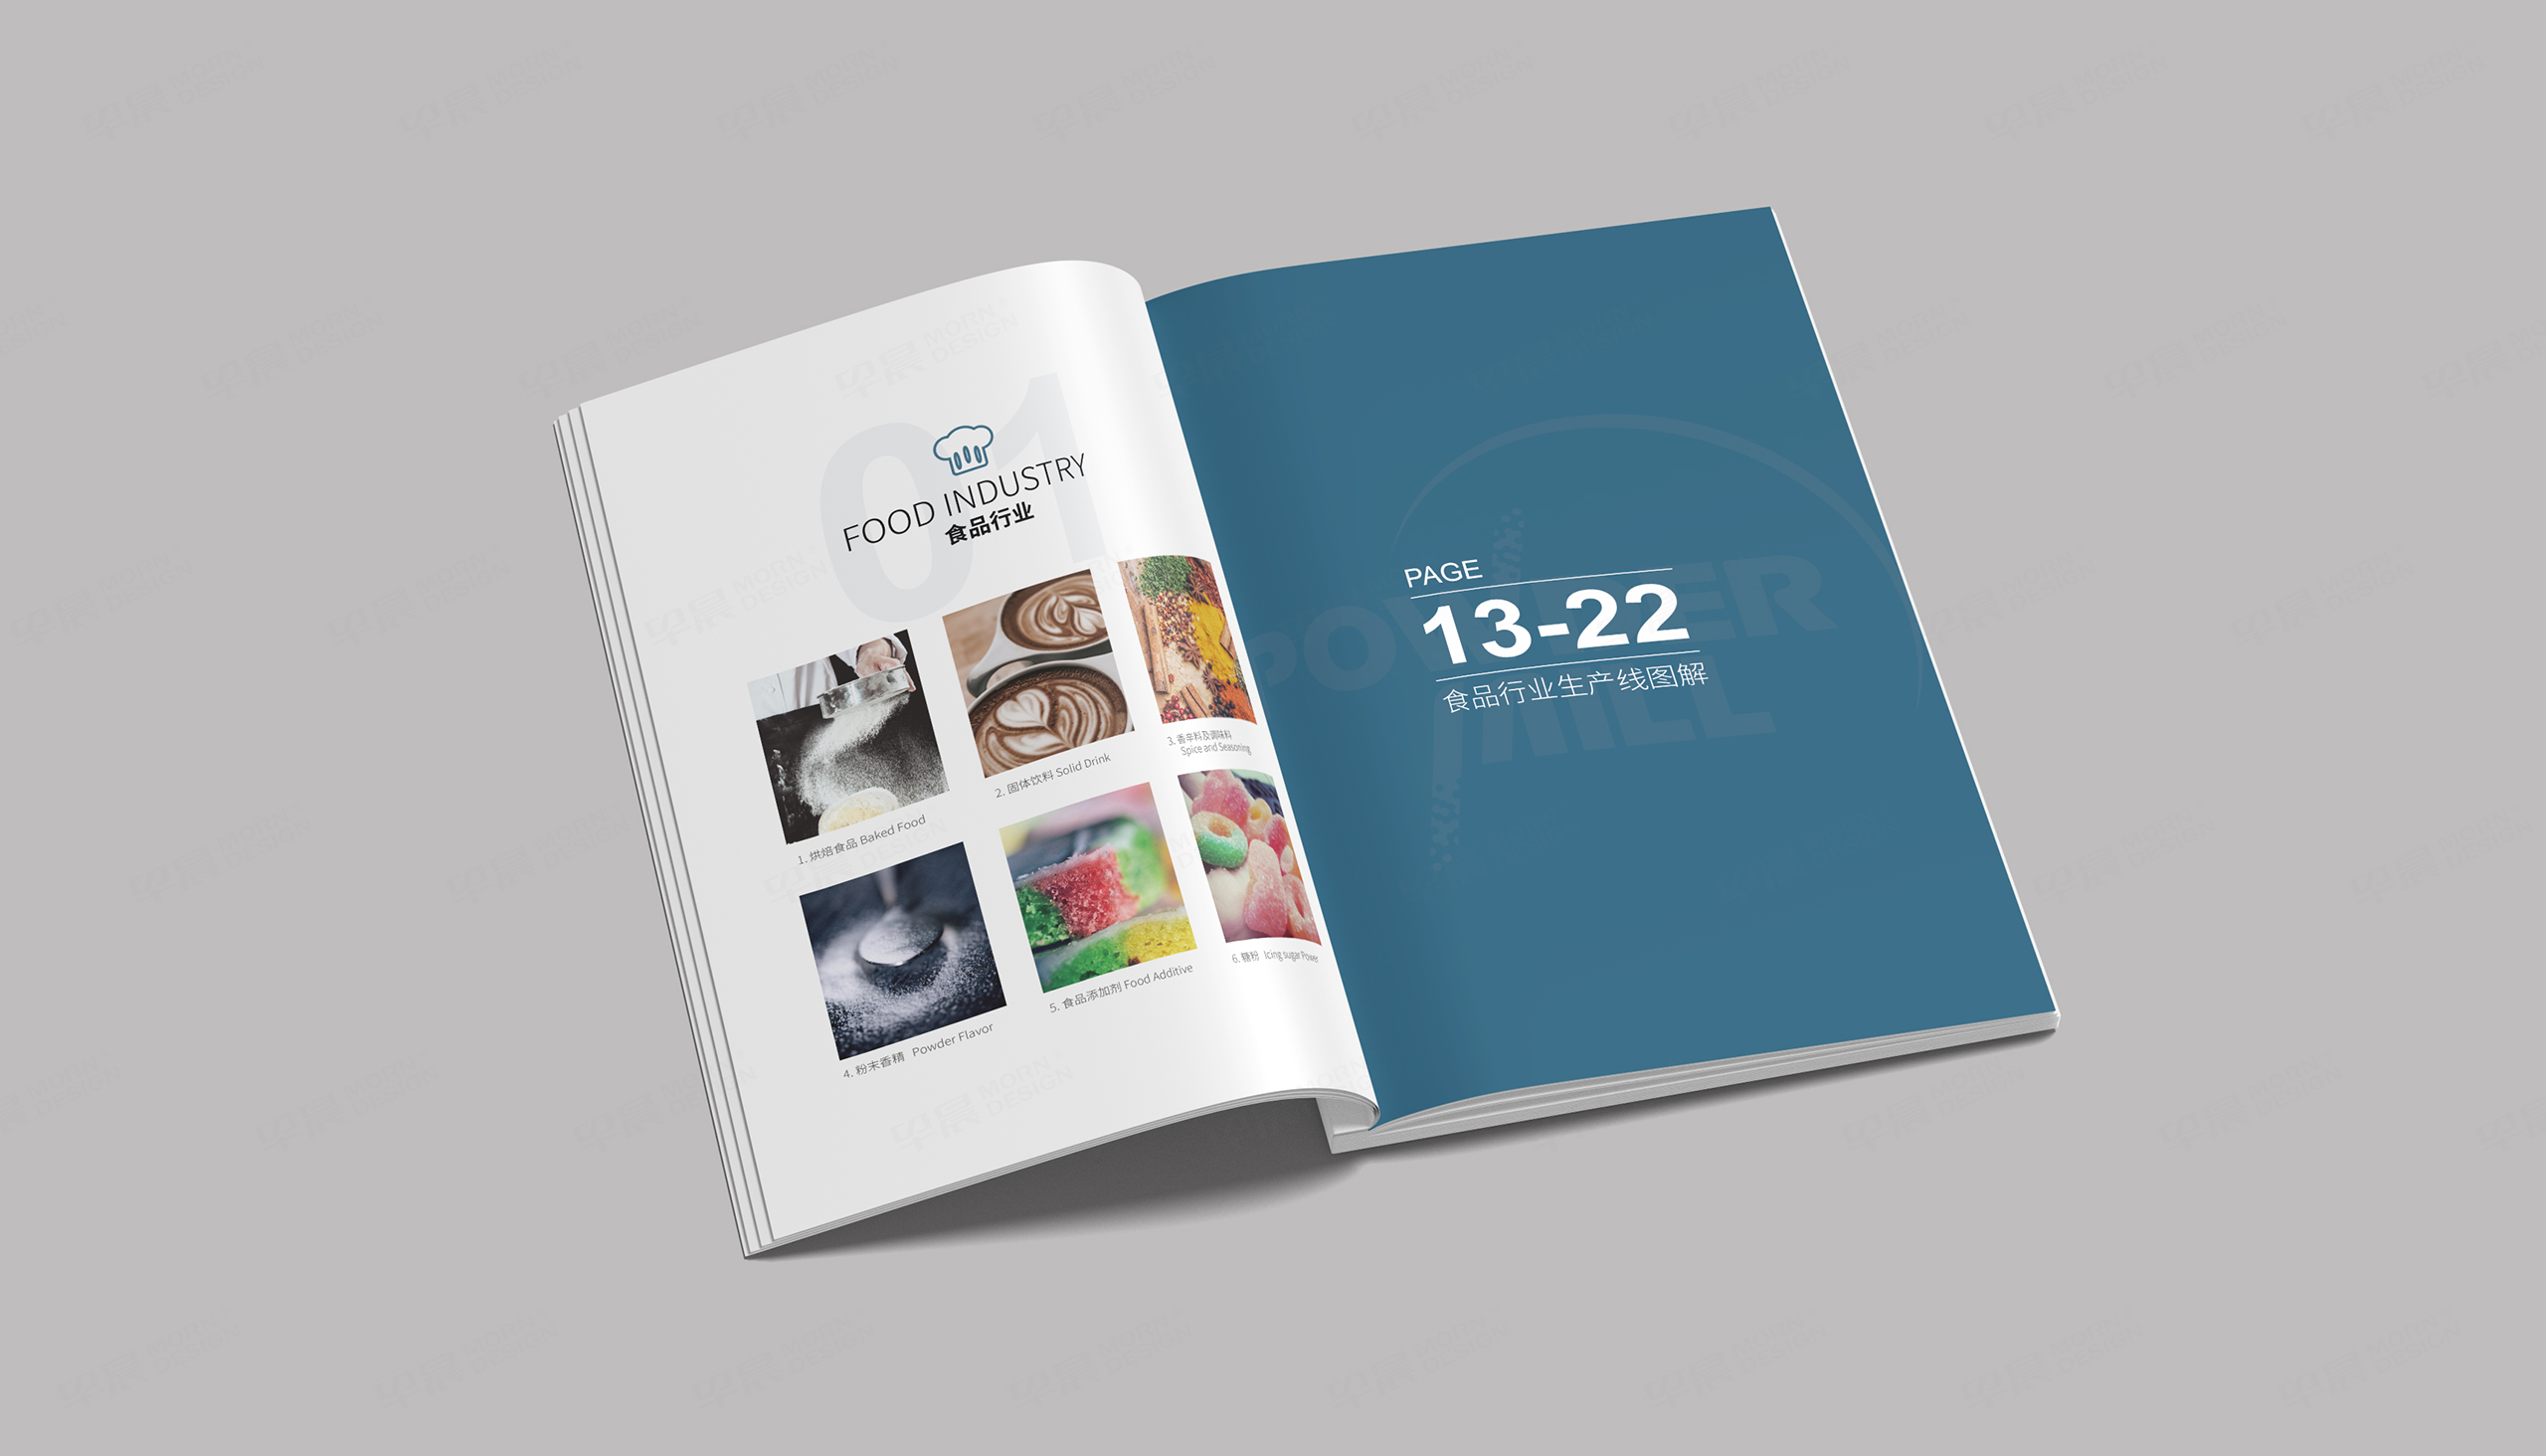 产品画册设计,米尔粉体画册设计,高端产品画册设计,制作,公司